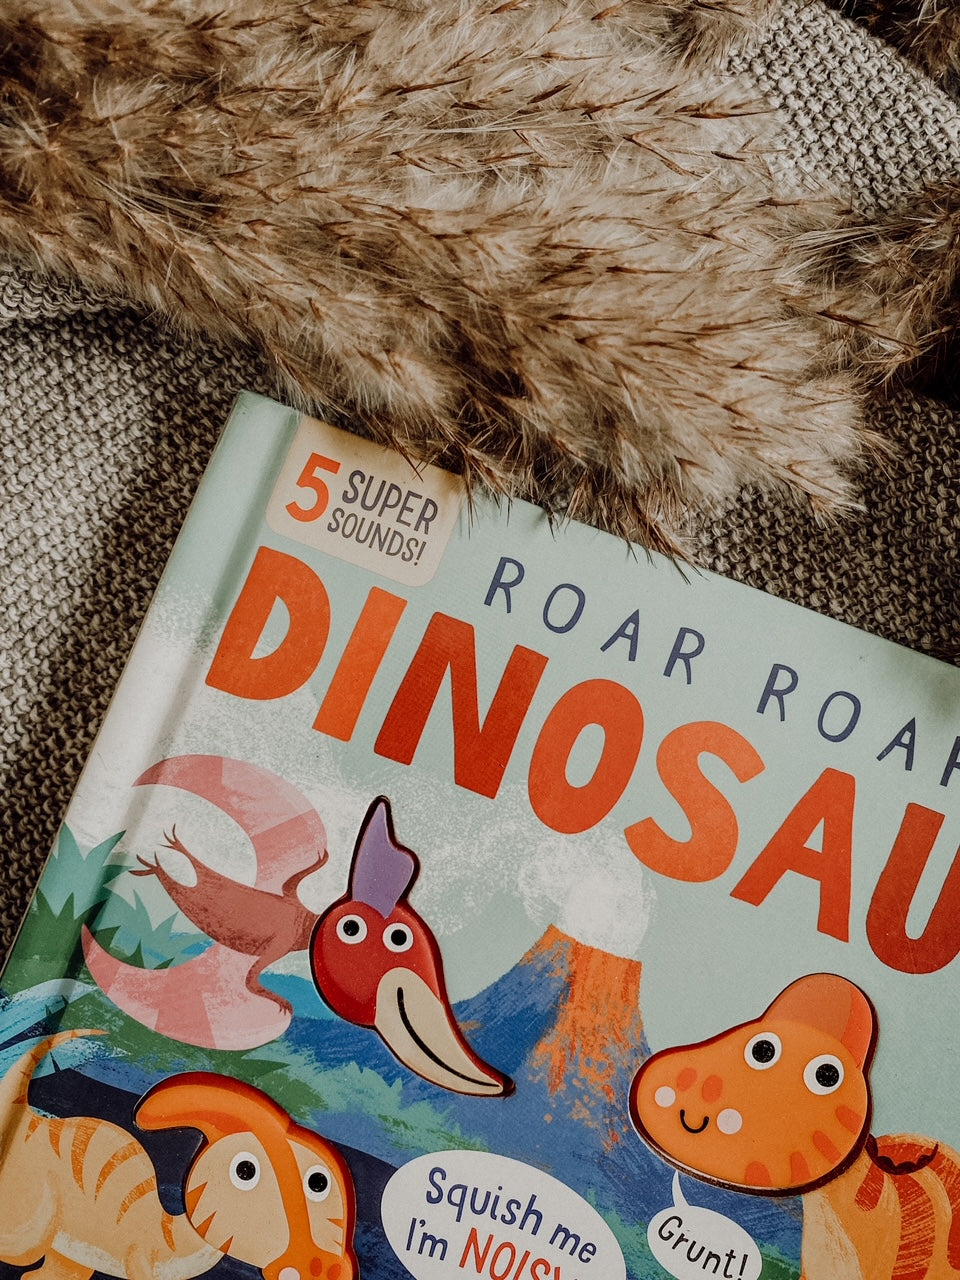 Roar! Roar! Dinosaur (Squishy Sounds)